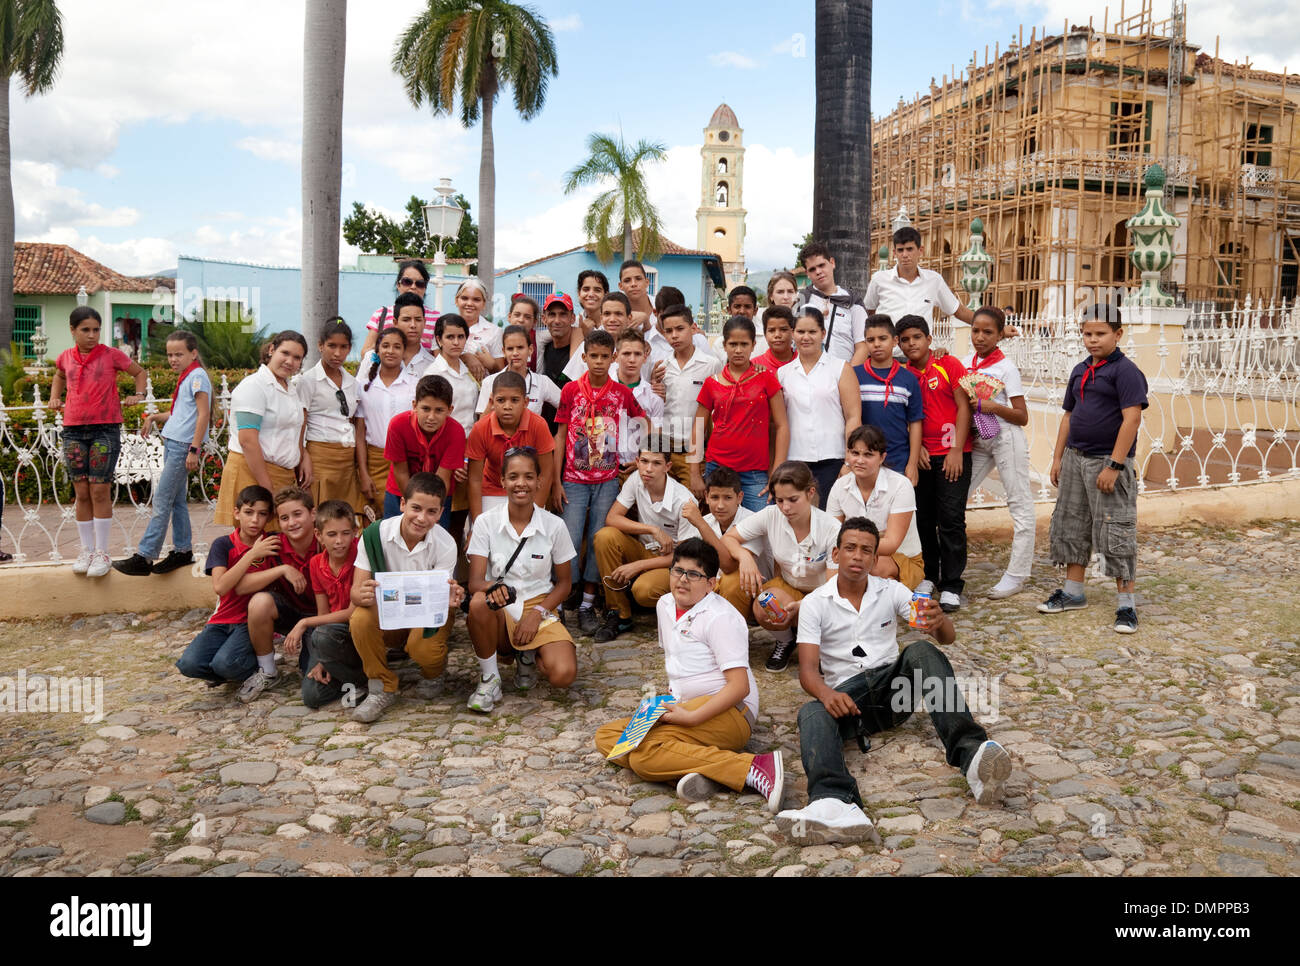 Cuba - un gruppo di allievi delle scuole secondarie in un giorno di viaggio nella Plaza Major central square, città di Trinidad, Cuba, Caraibi Foto Stock